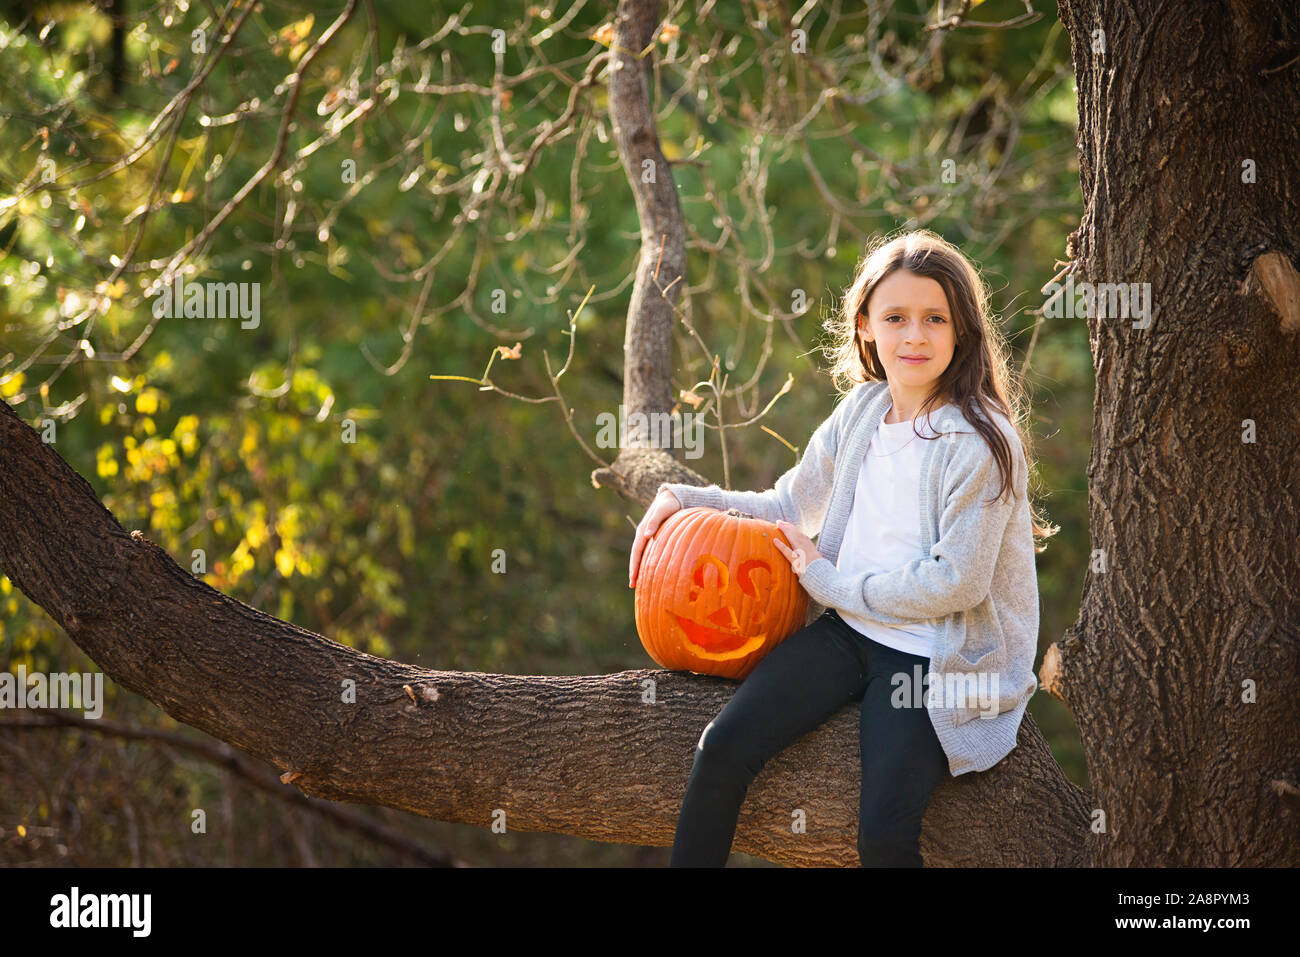 Giovane ragazza seduta nella struttura ad albero con zucca intagliato Foto Stock